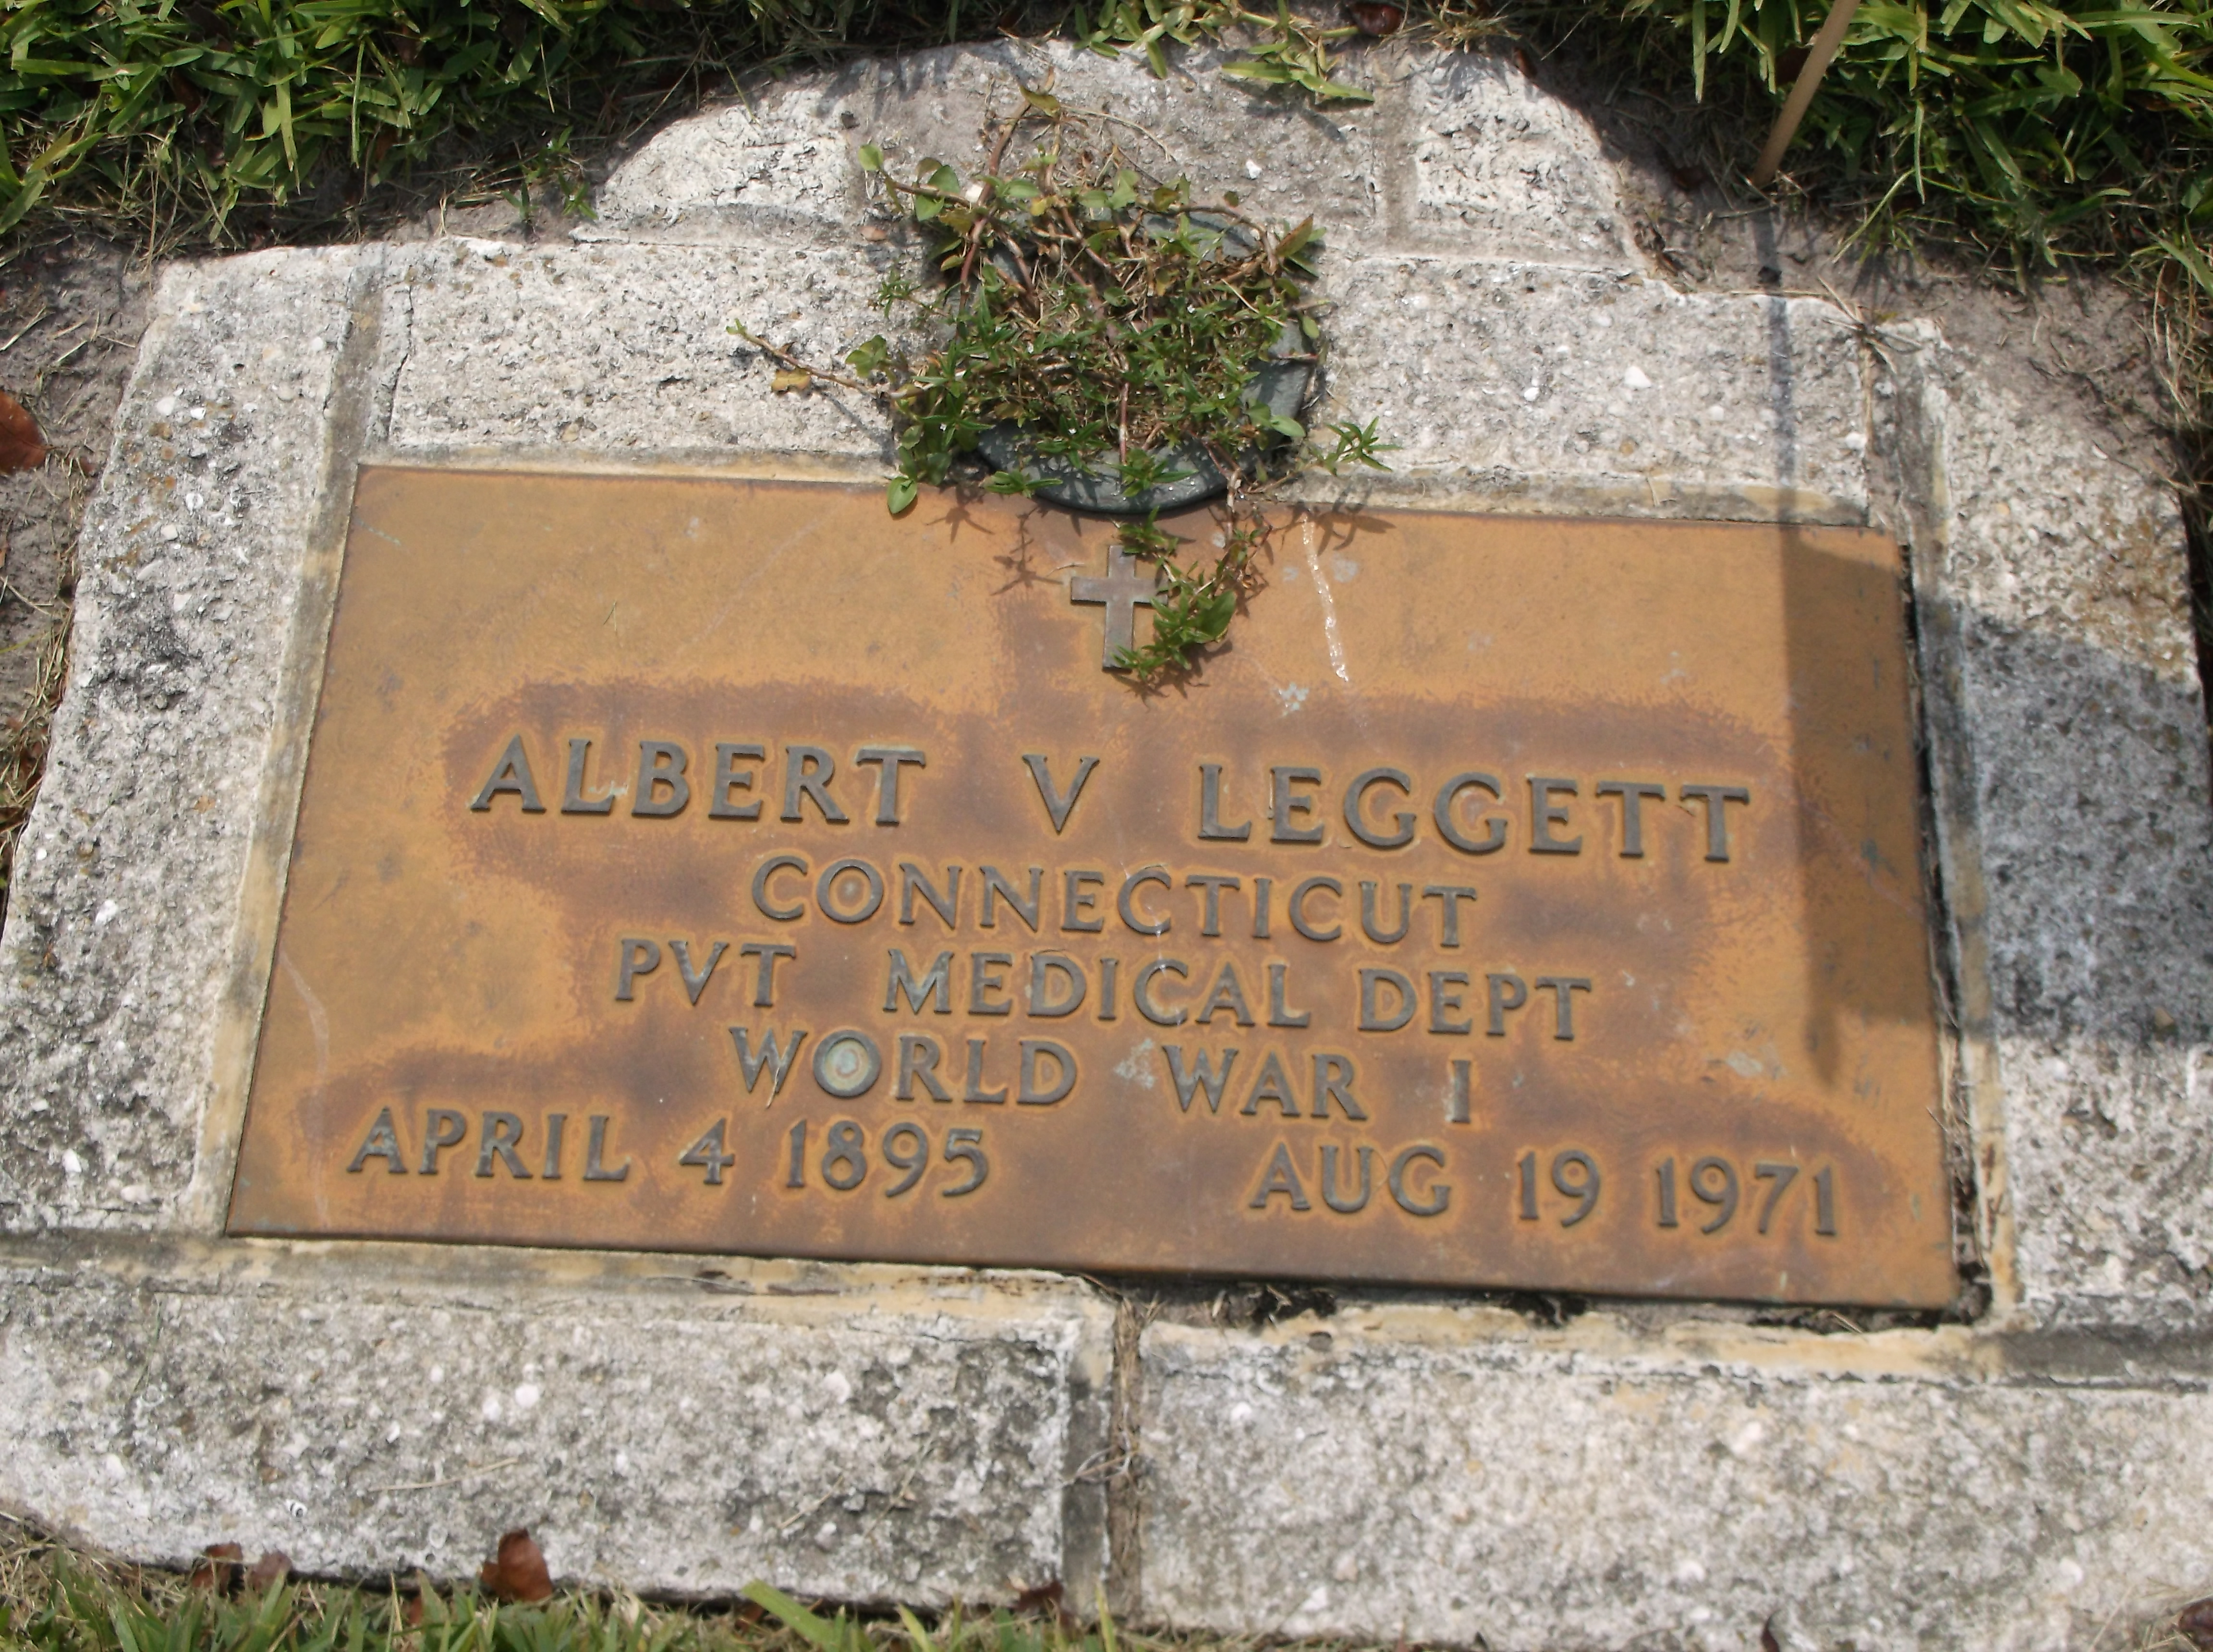 Albert V Leggett